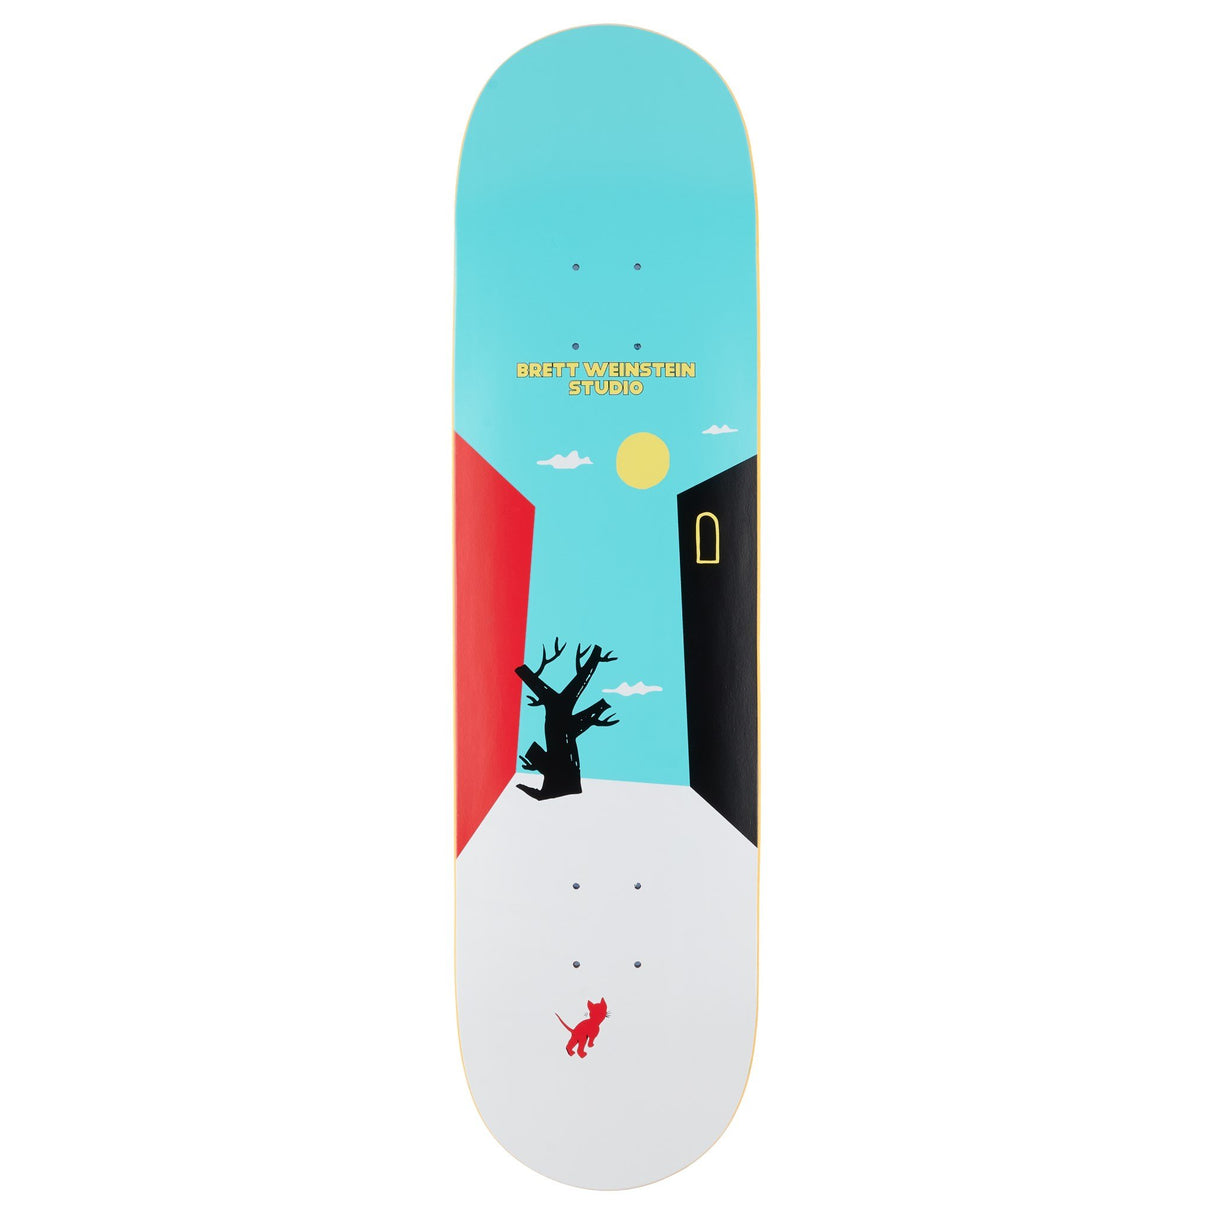 Studio Weinstein Alley Cat 8.25" Skateboard Deck